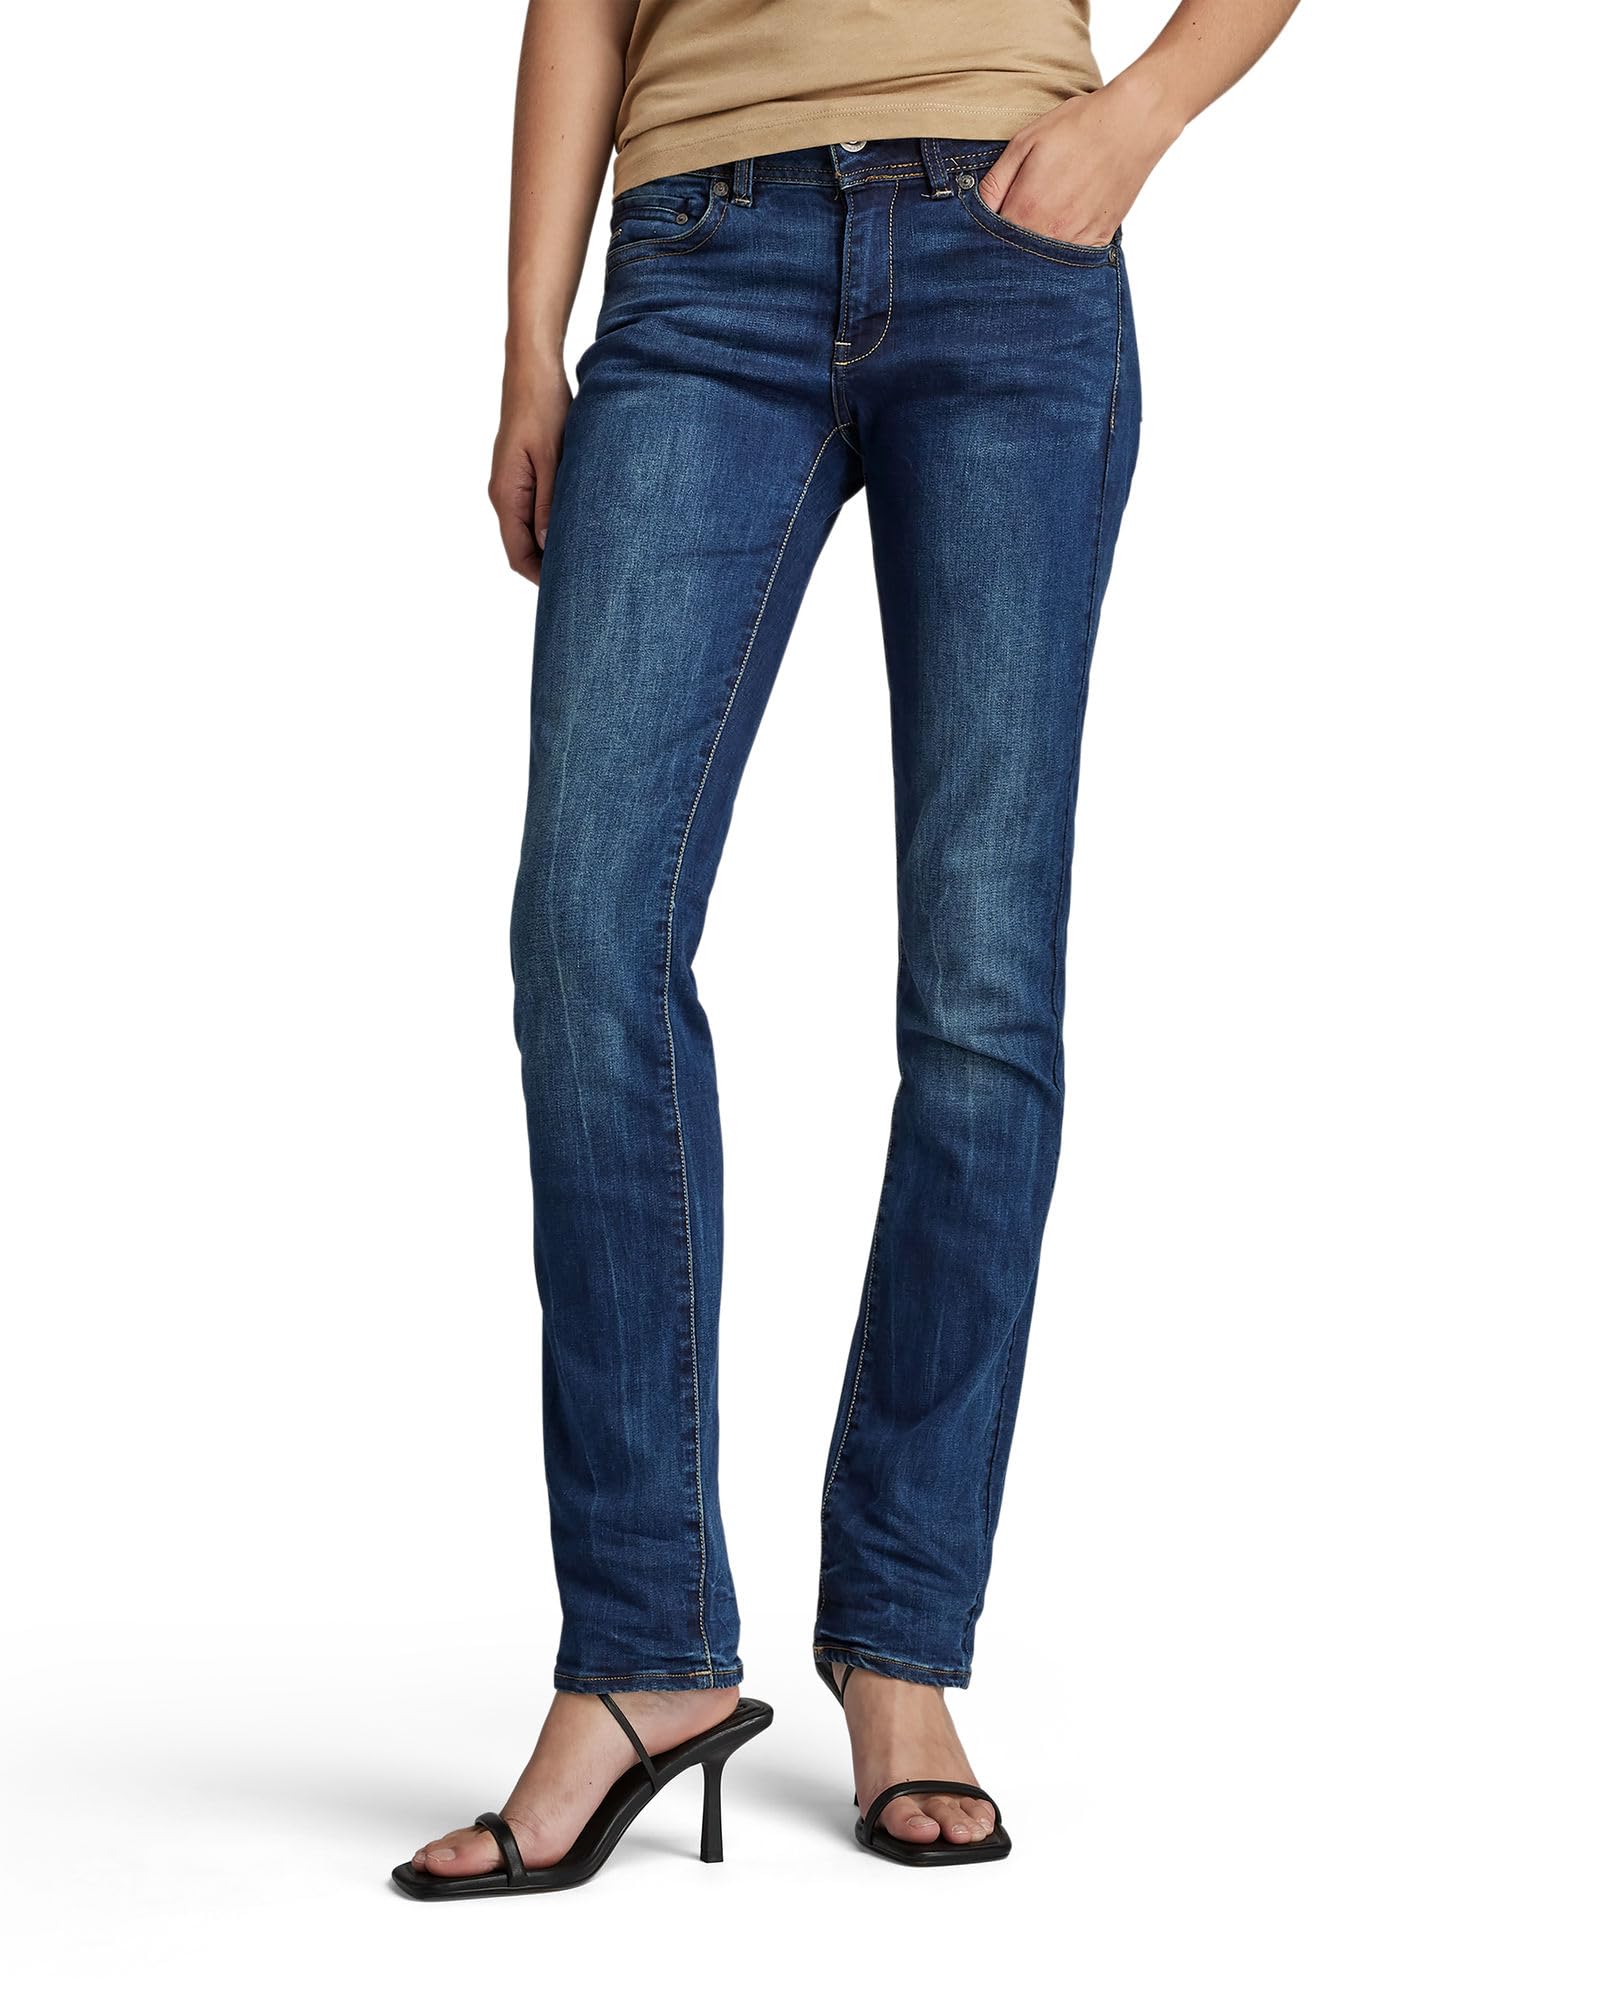 G-STAR RAW Damen Midge Saddle Straight Jeans, Blau (dk aged D02153-6553-89), 26W / 32L